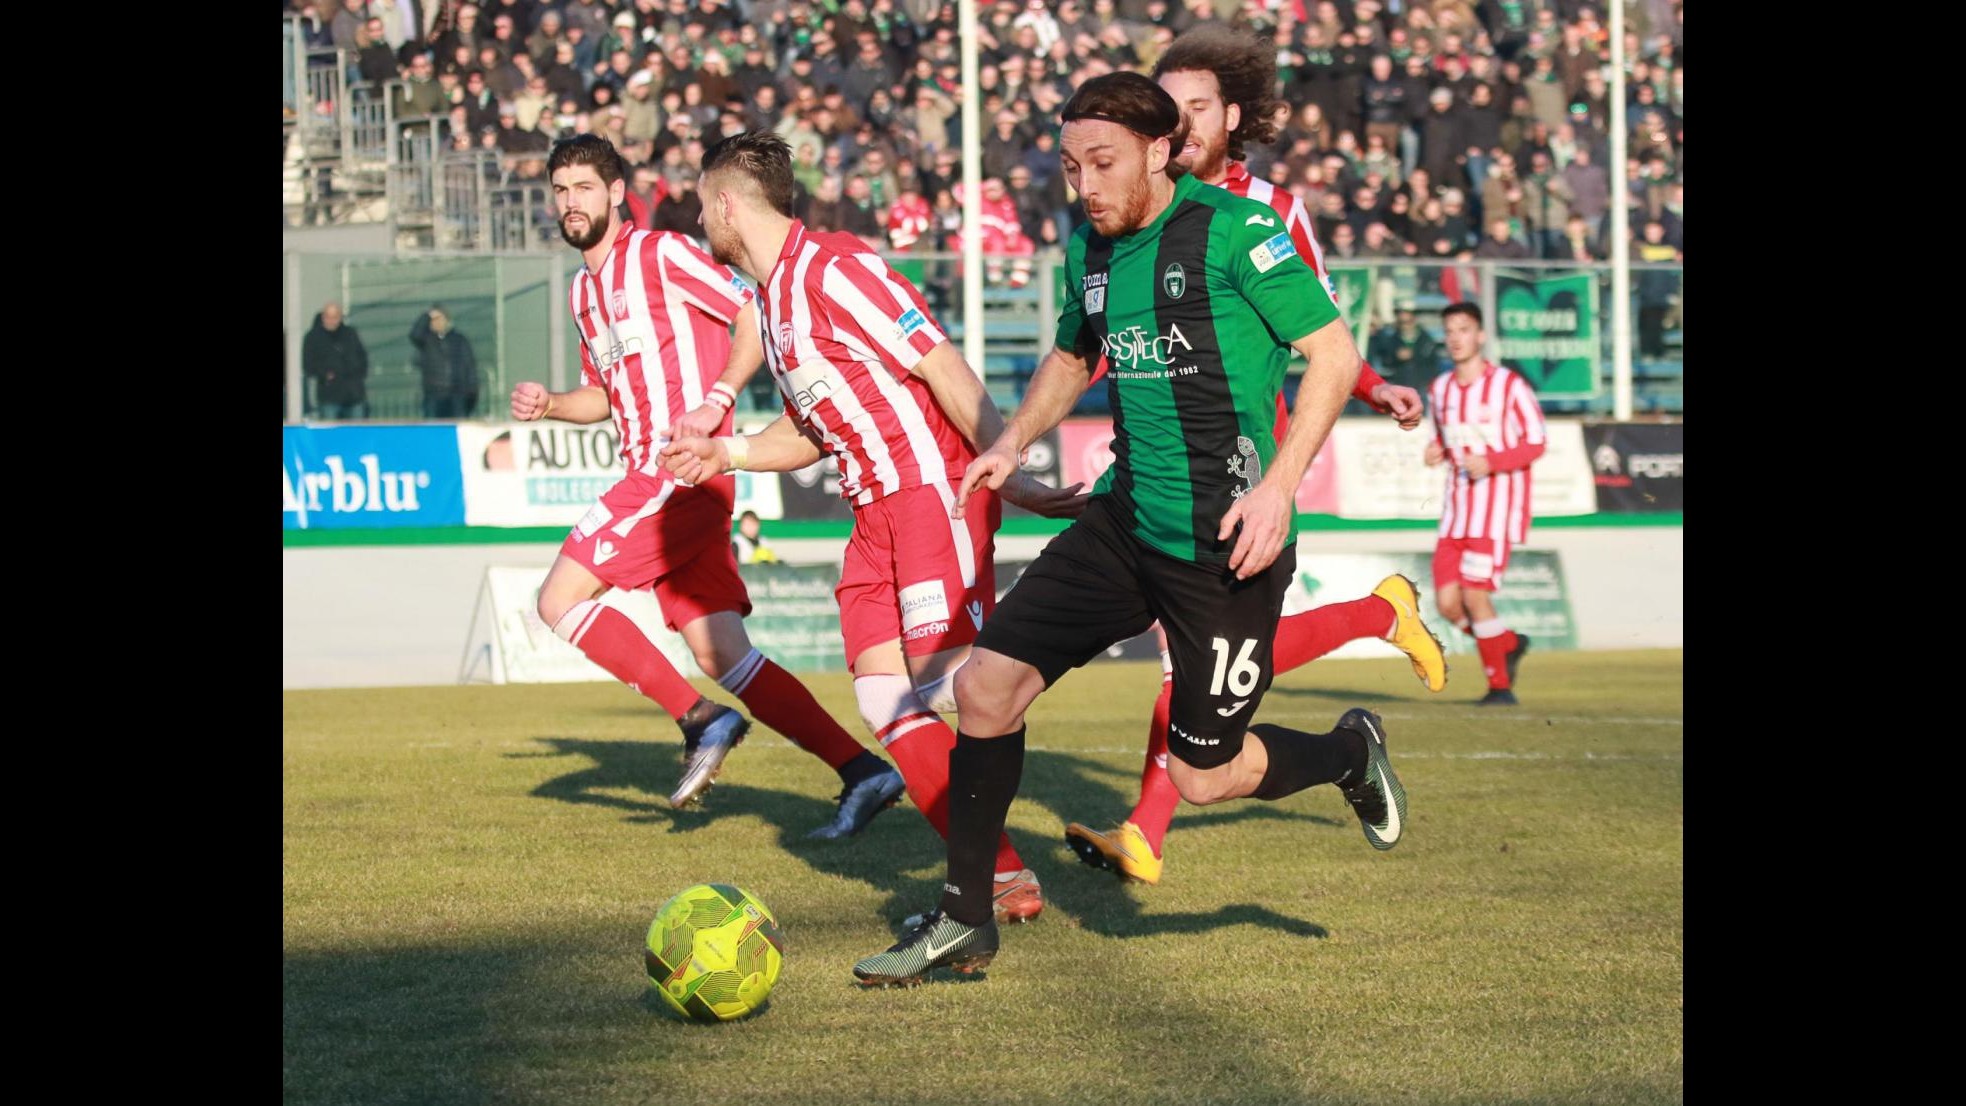 FOTO Lega Pro, cinquina del Pordenone contro il Forlì